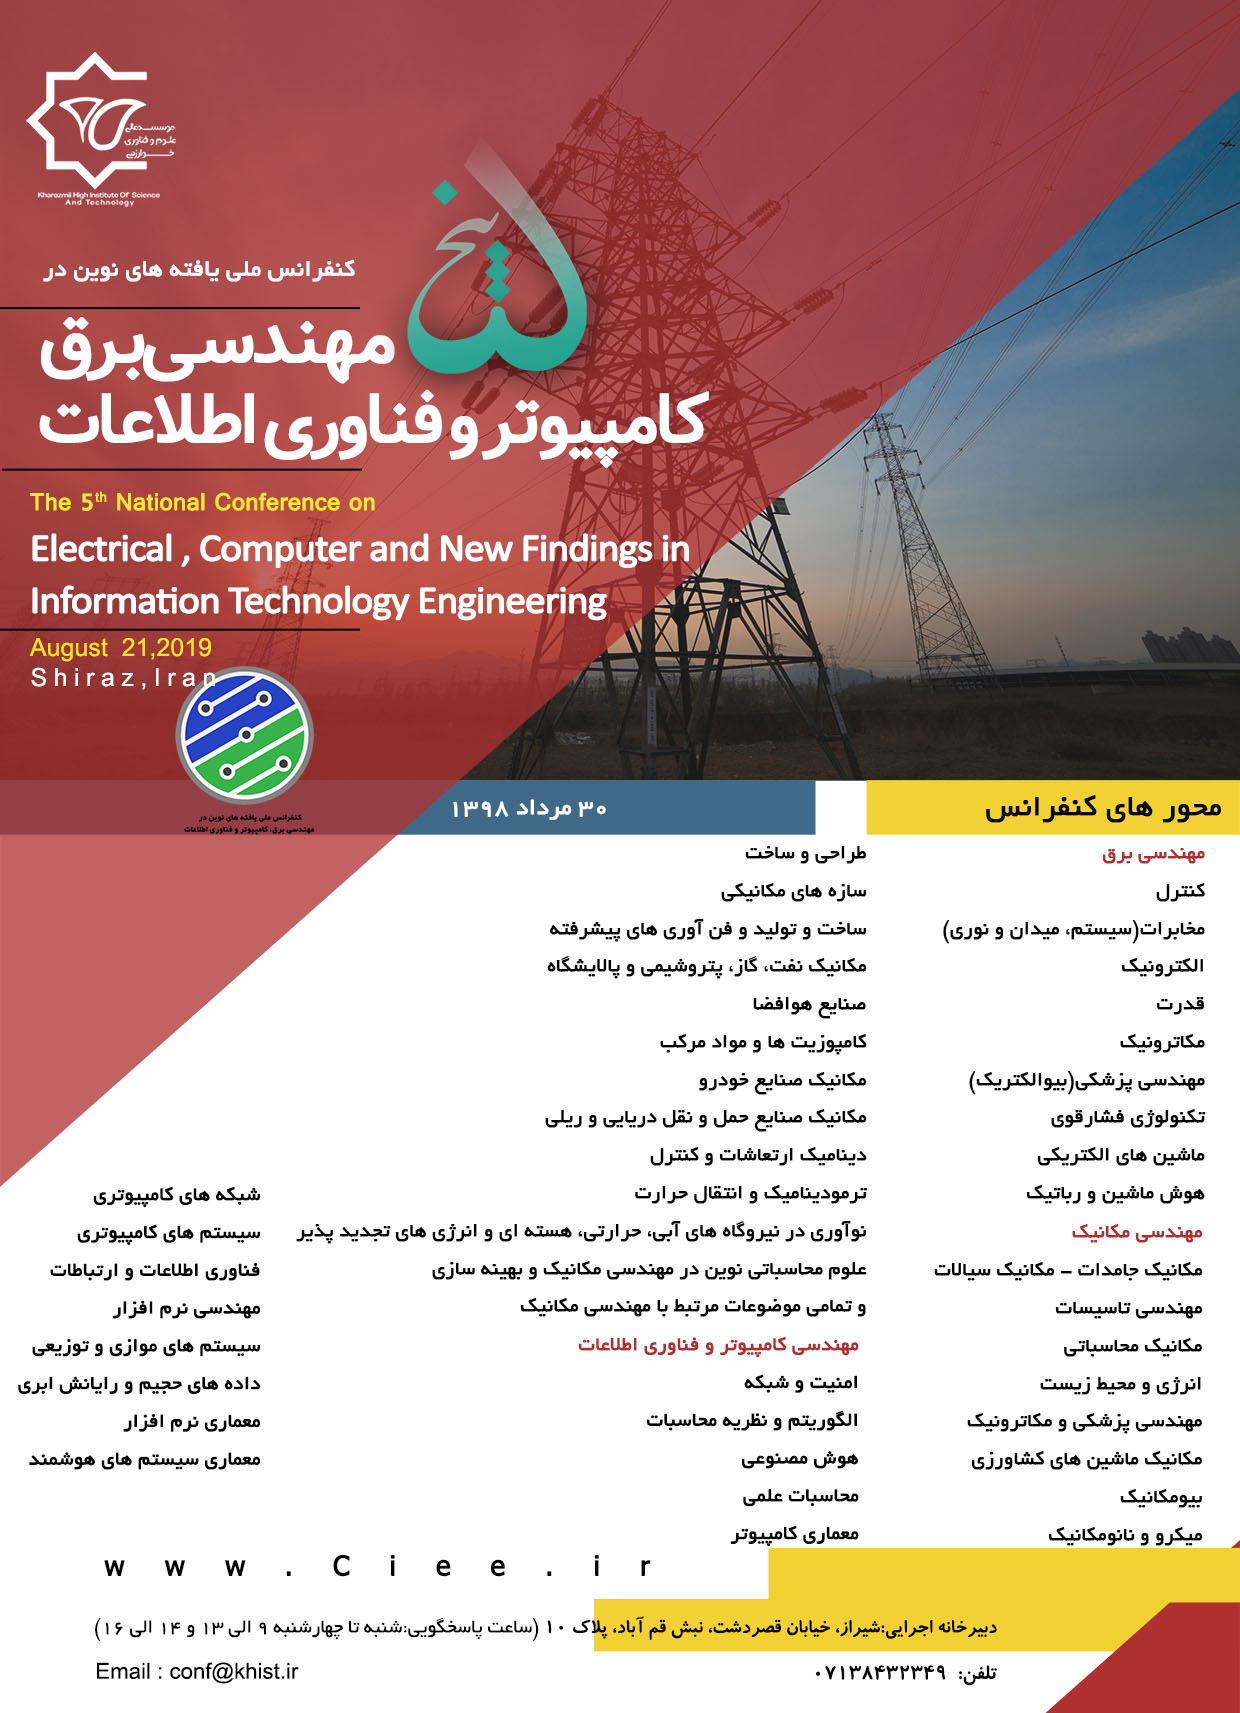 پوستر پنجمین کنفرانس ملی یافته های نوین در مهندسی برق، کامپیوتر و فناوری اطلاعات